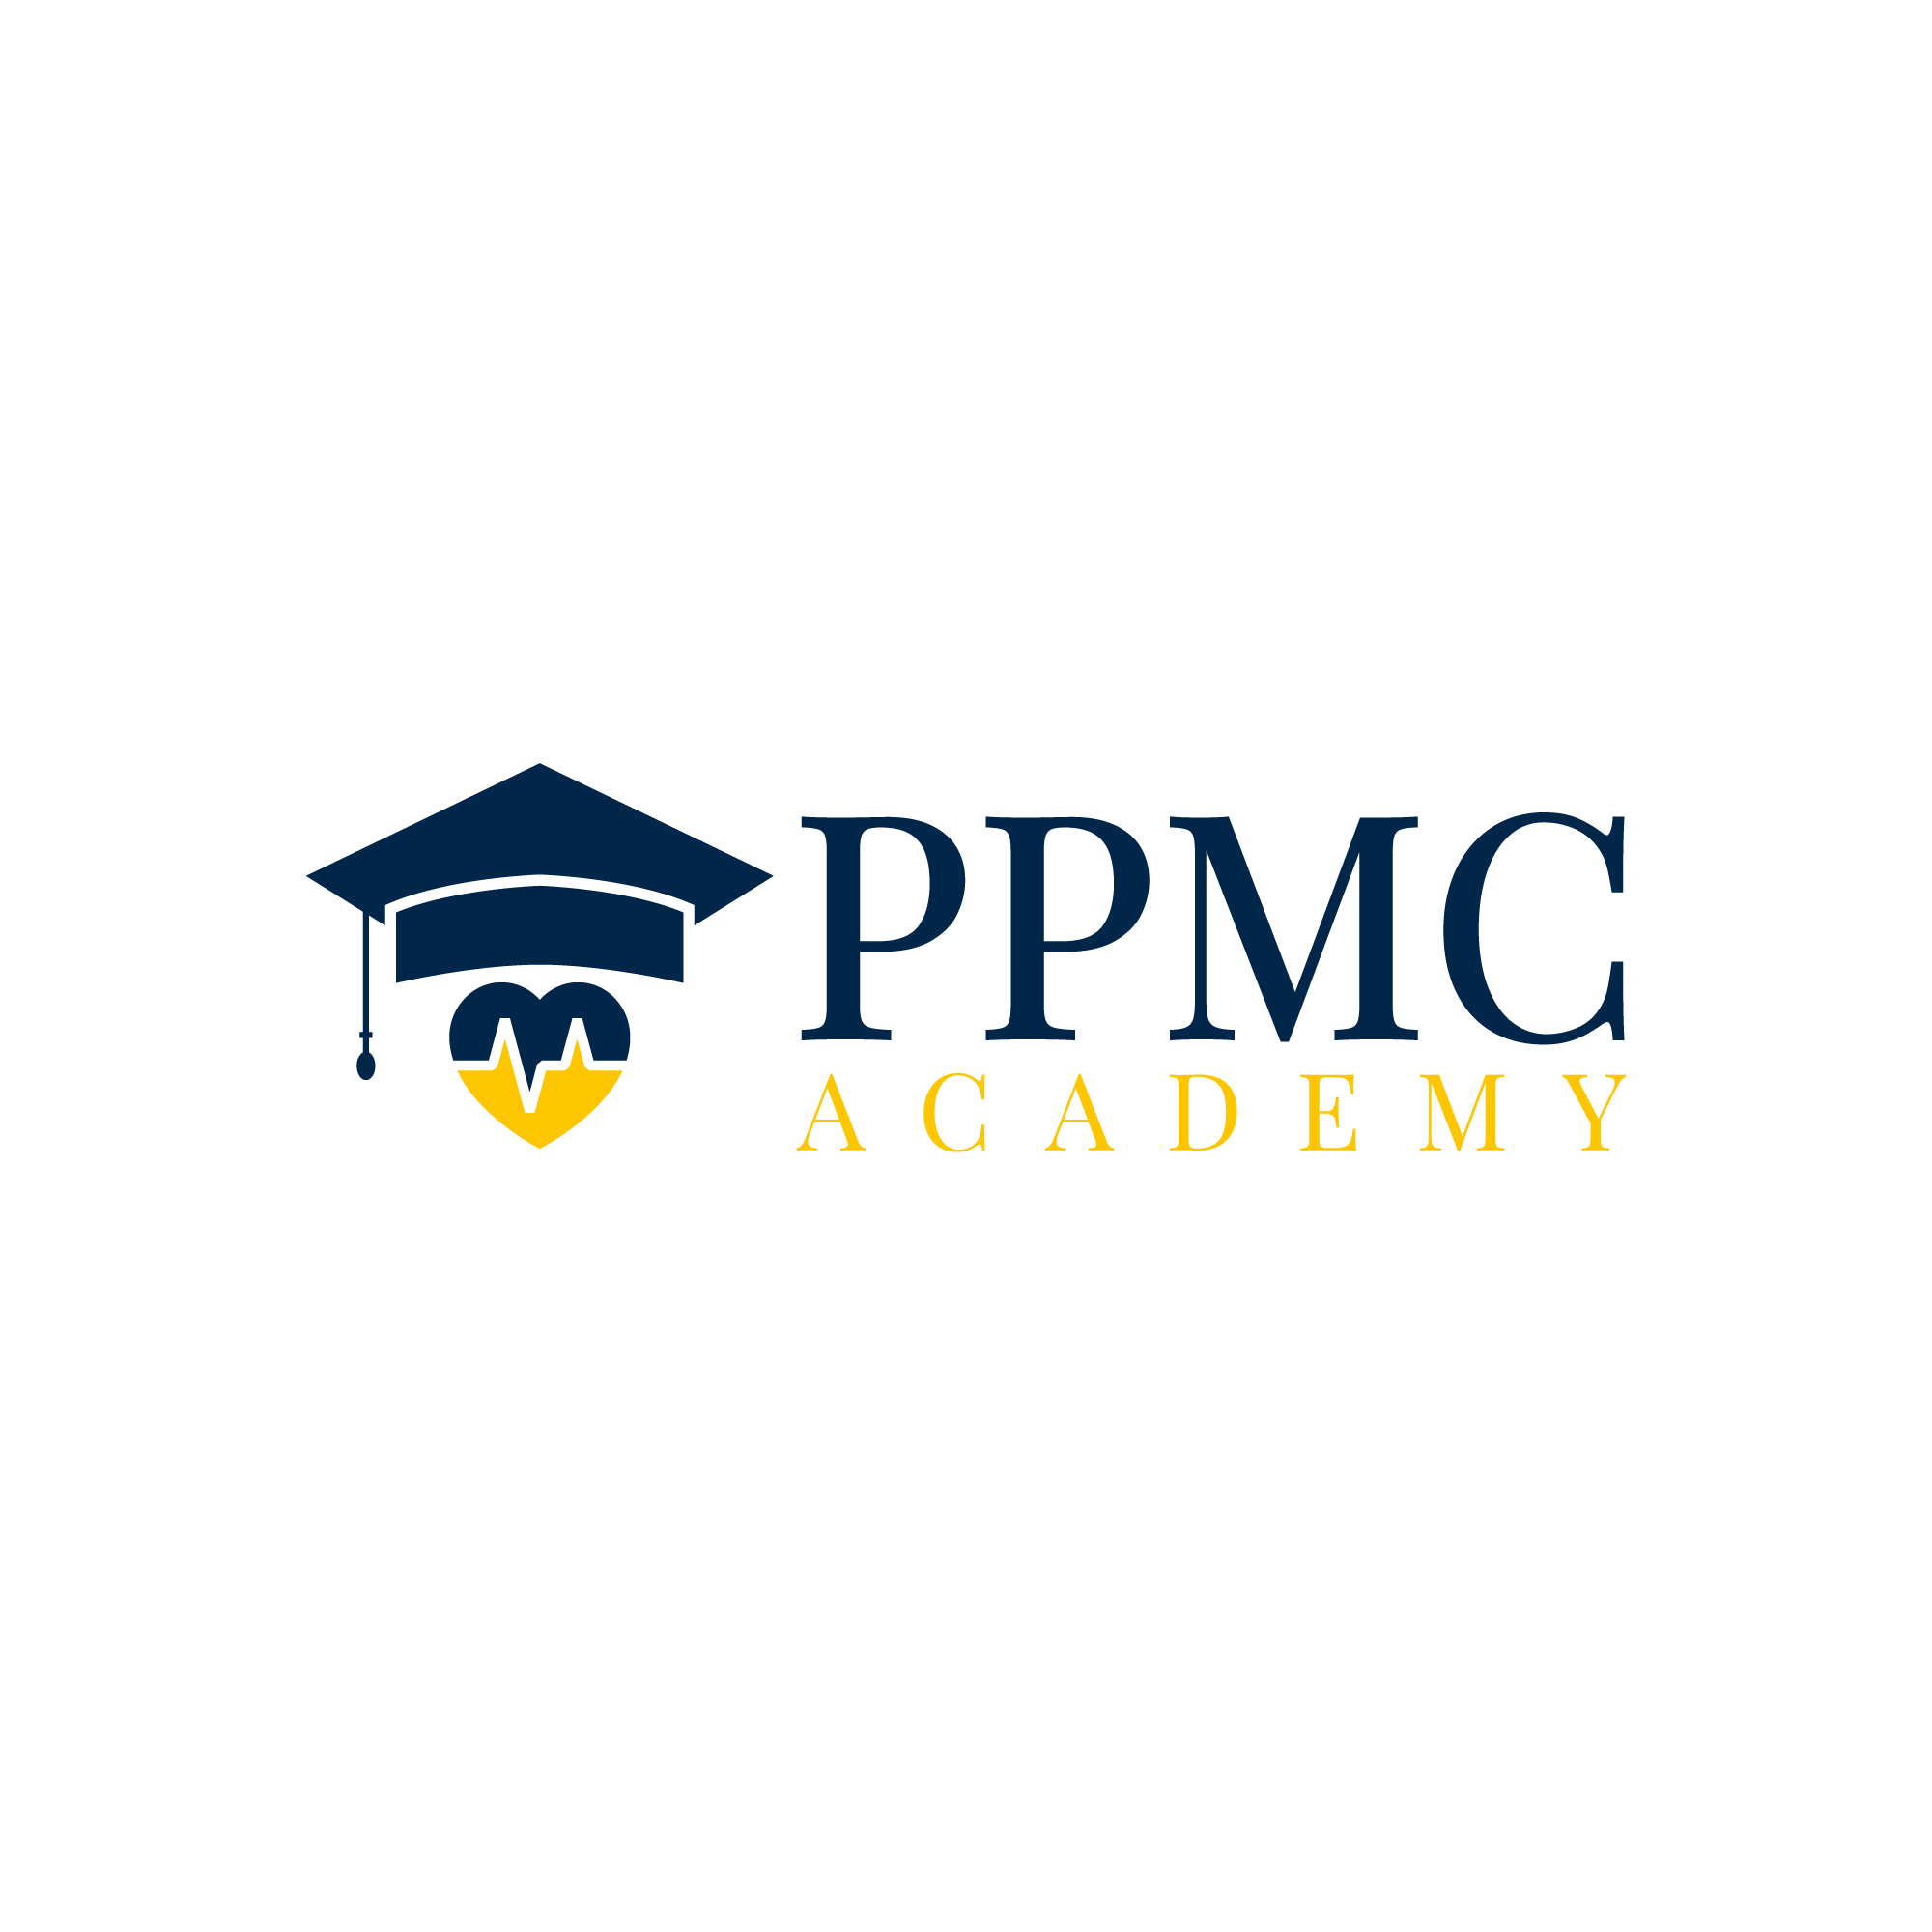 PPMC Academy